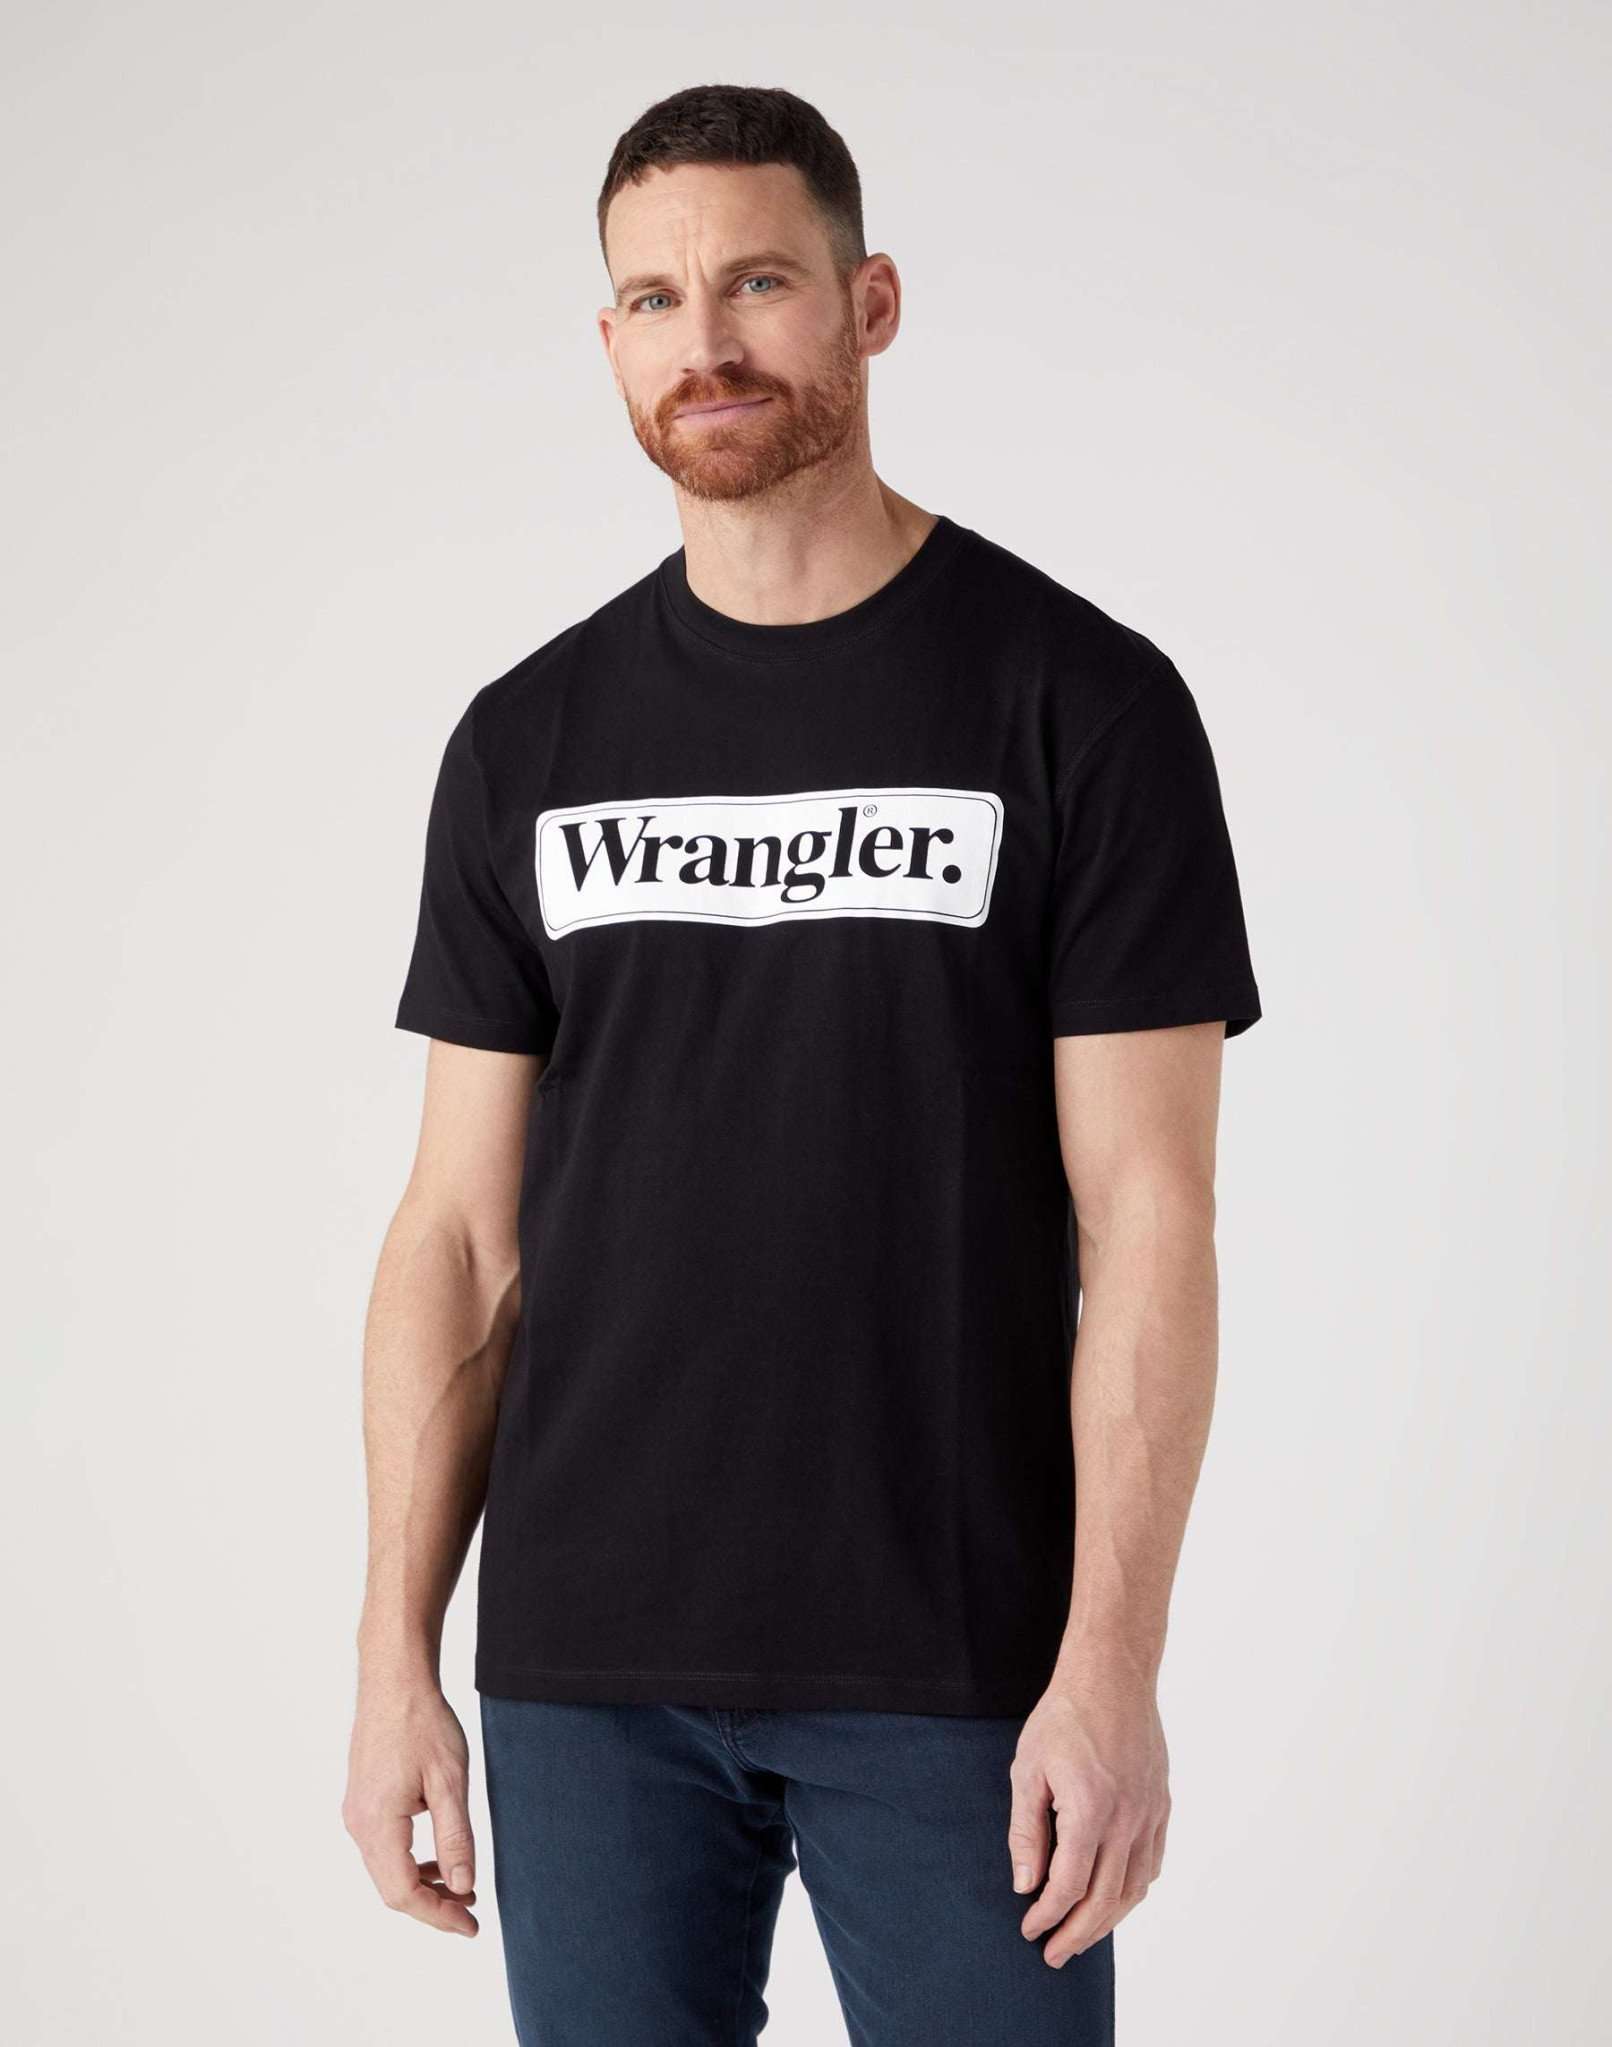 Wrangler Tee in Black T-Shirts Wrangler   